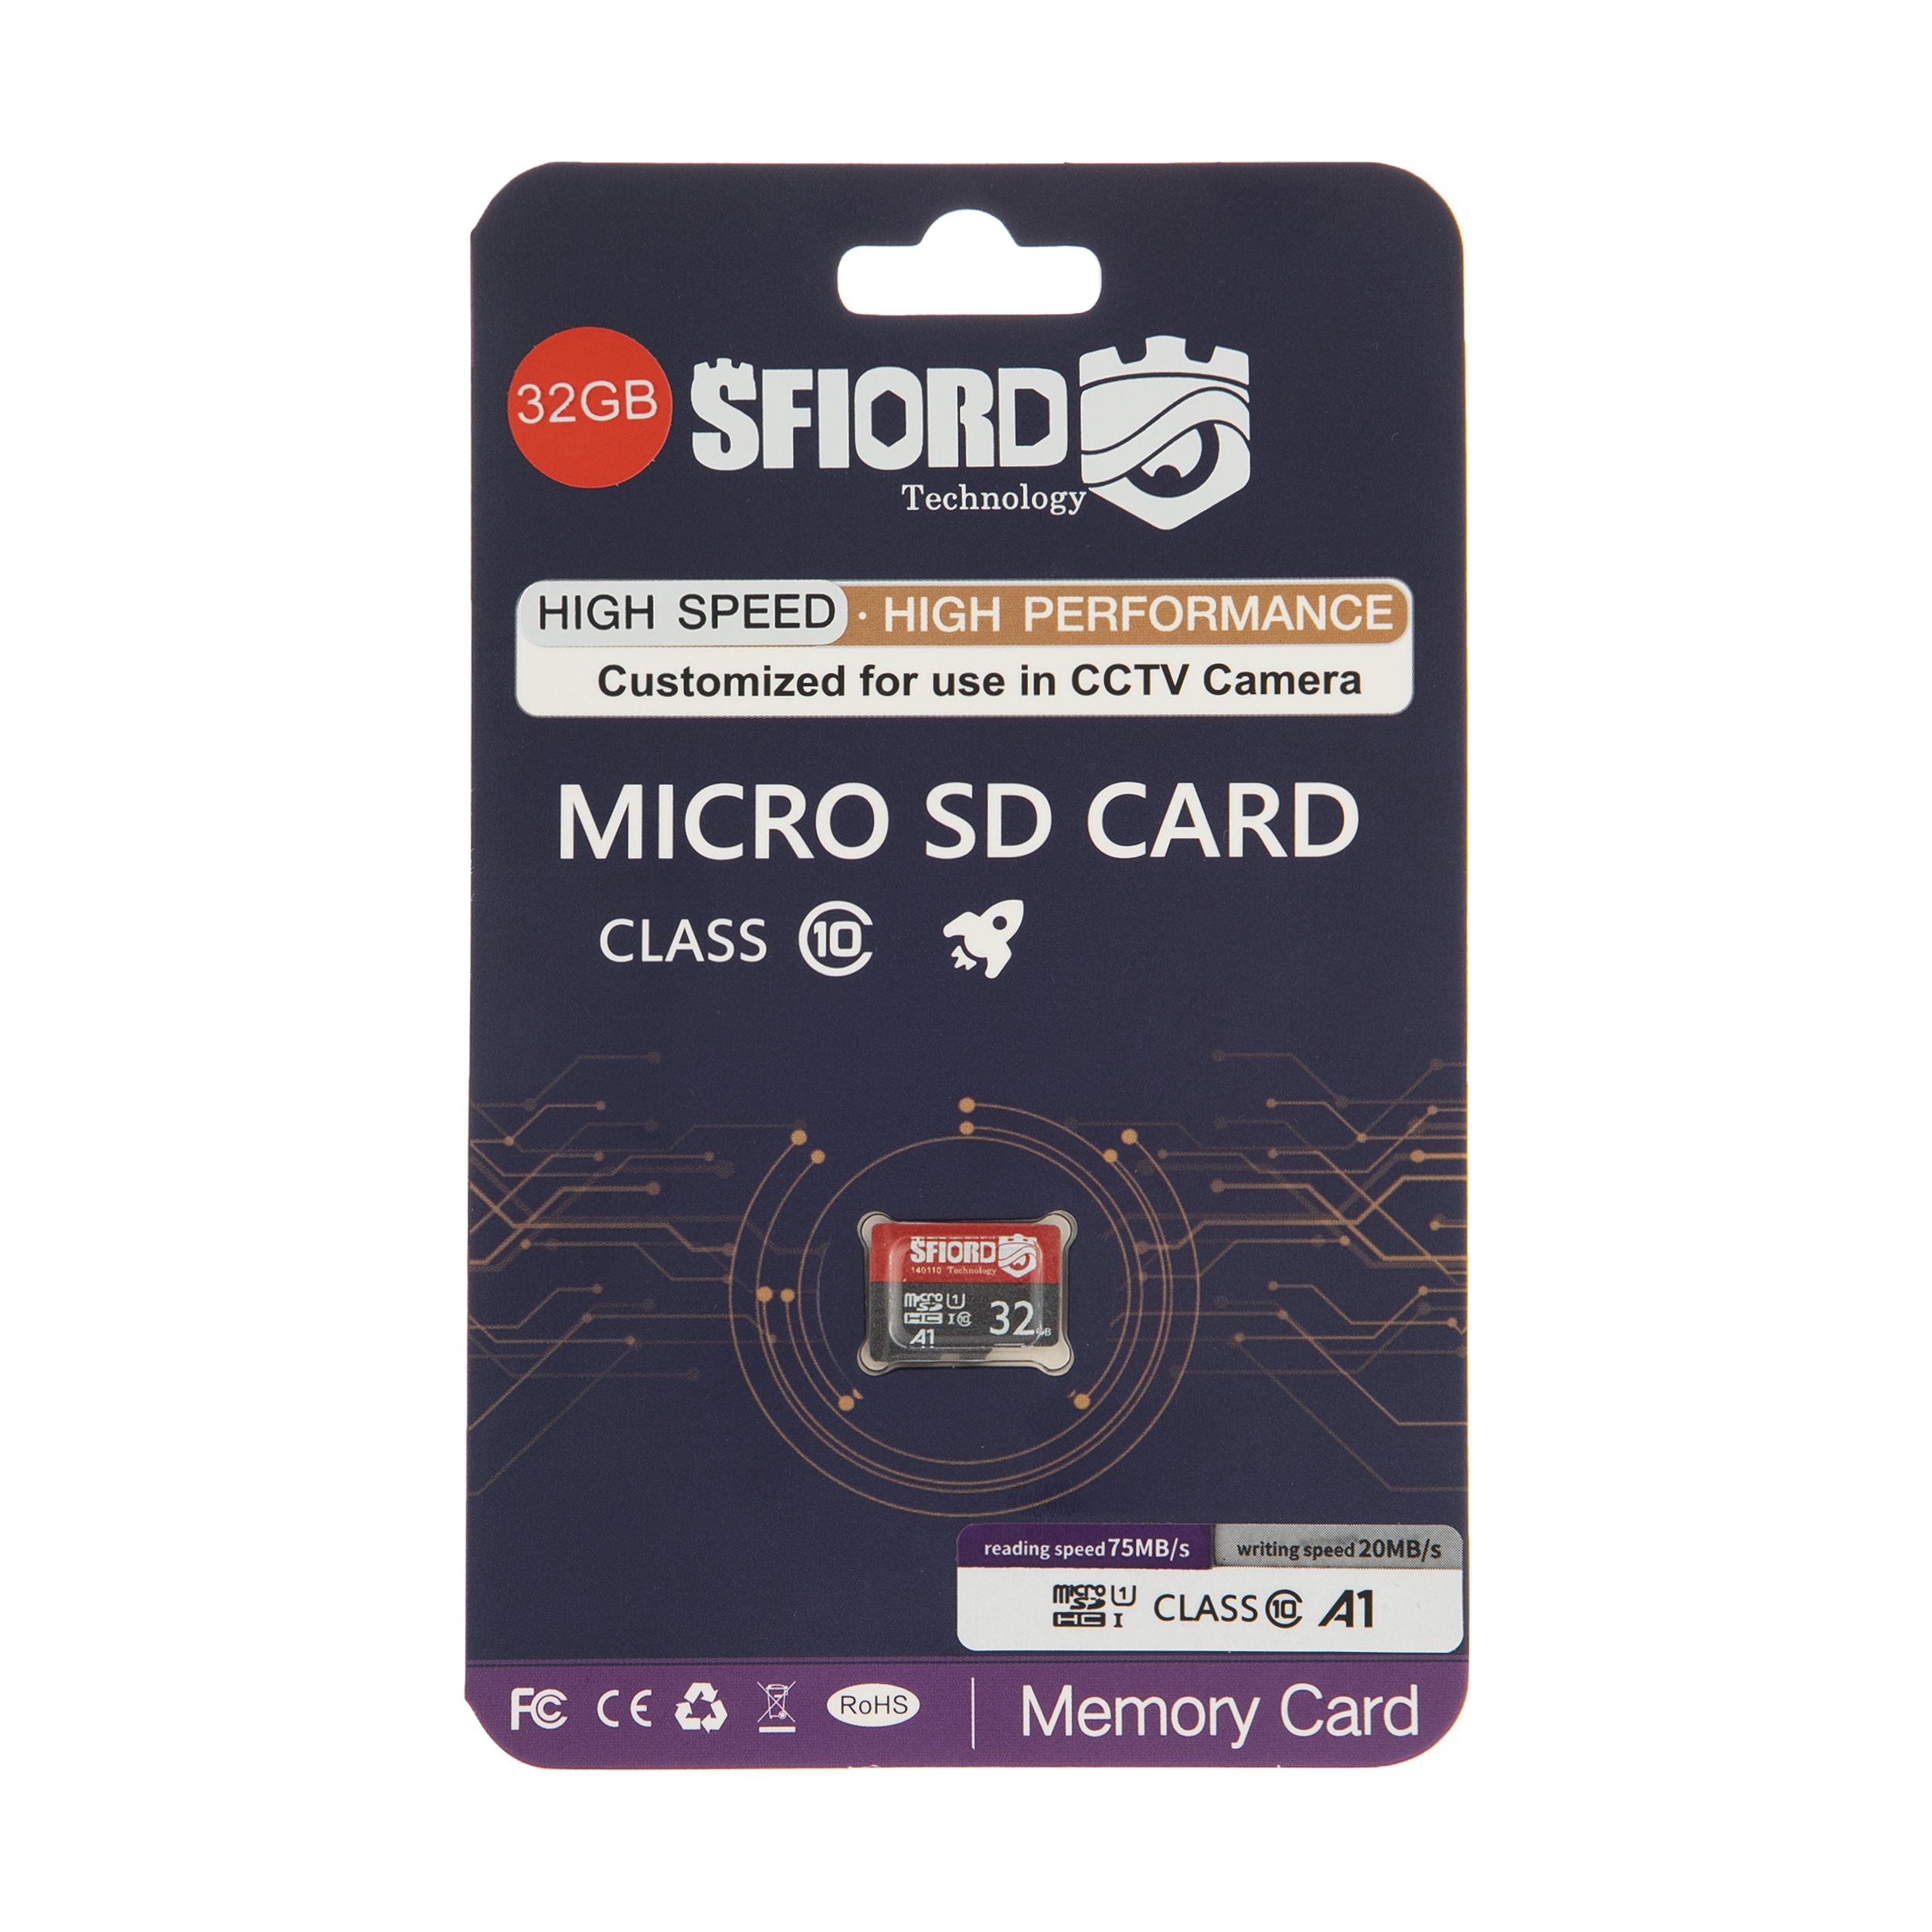 کارت حافظه microSDXC اسفیورد مدل Ultra A1 کلاس 10 استاندارد UHS-I سرعت 95MBps ظرفیت 32 گیگابایت